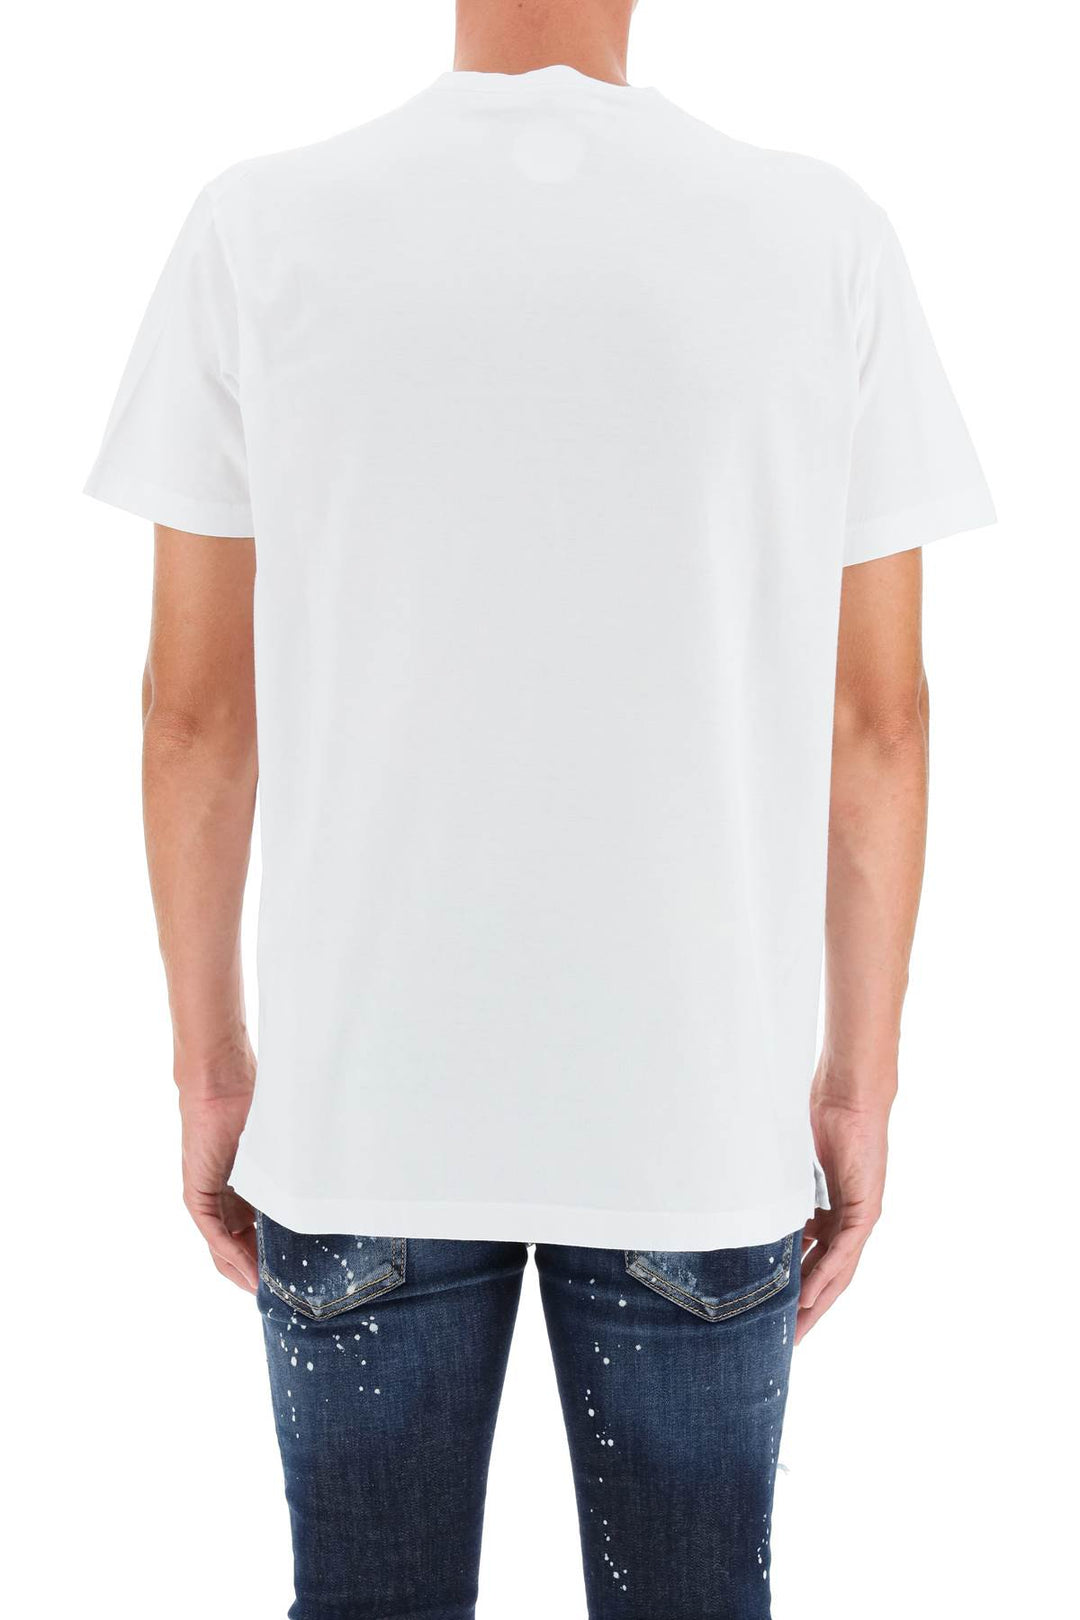 T Shirt Invicta - Dsquared2 - Uomo